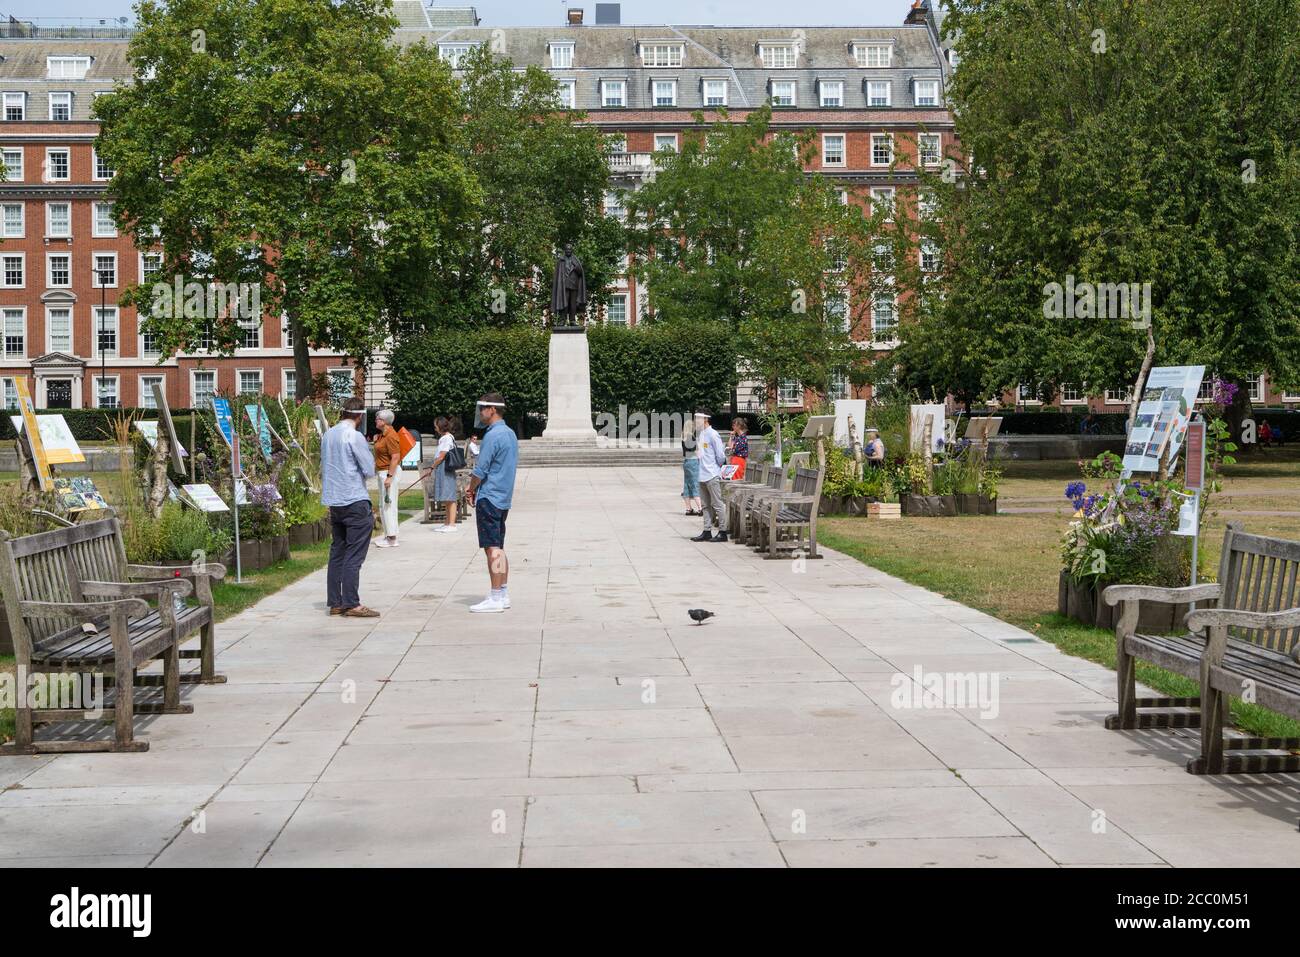 Mostra e consultazione pubblica in corso in Grosvenor Square per la proposta di riprogettazione della piazza, Mayfair, Londra, Inghilterra, Regno Unito Foto Stock